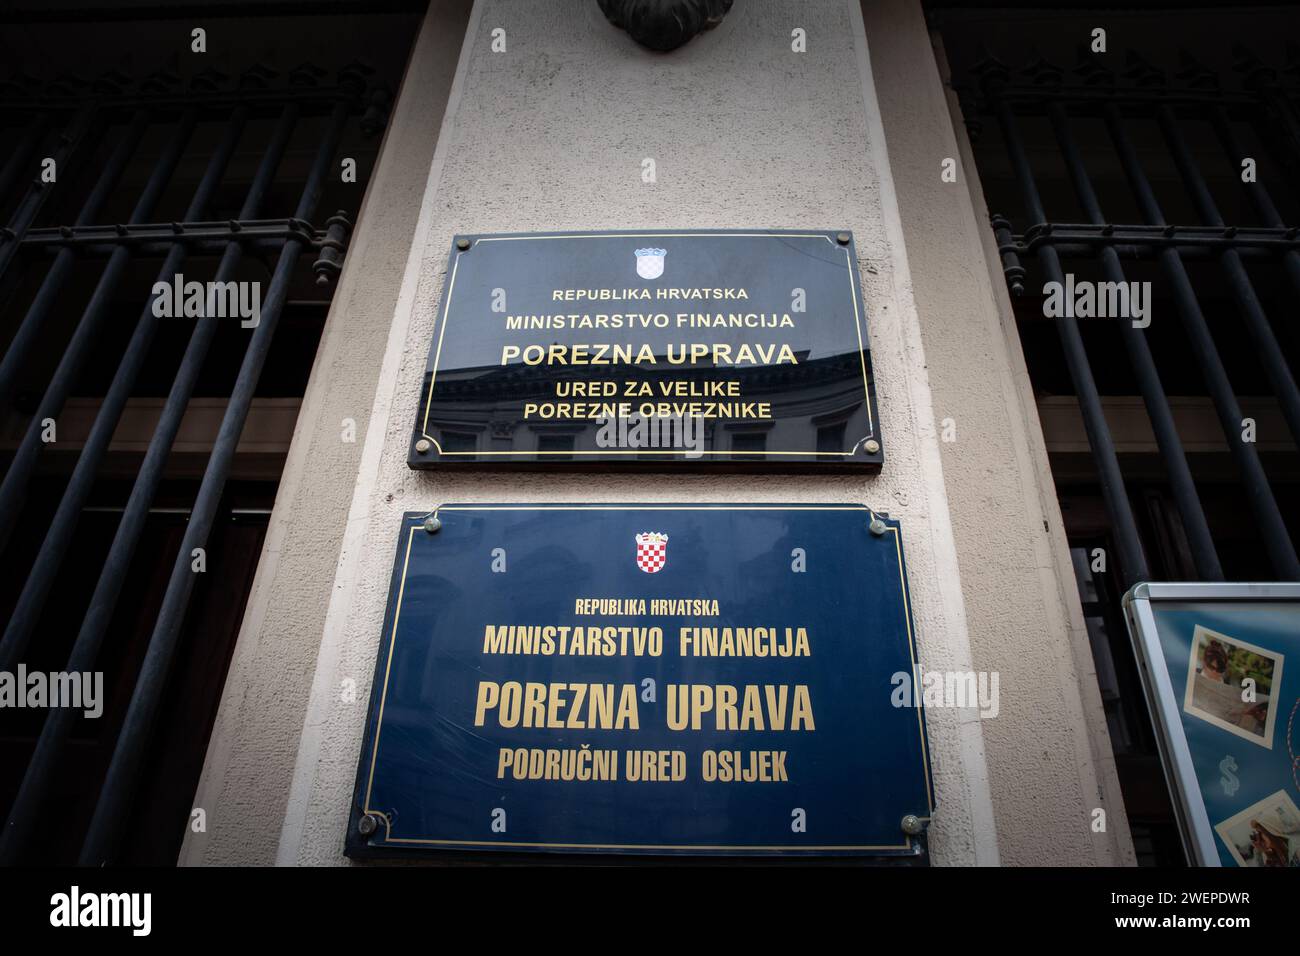 Bild des Eingangs zur kroatischen Steuerverwaltung, genannt porezna uprava, zuständig für die Verwaltung der Steuerpolitik Kroatiens, in osijek, Croa Stockfoto